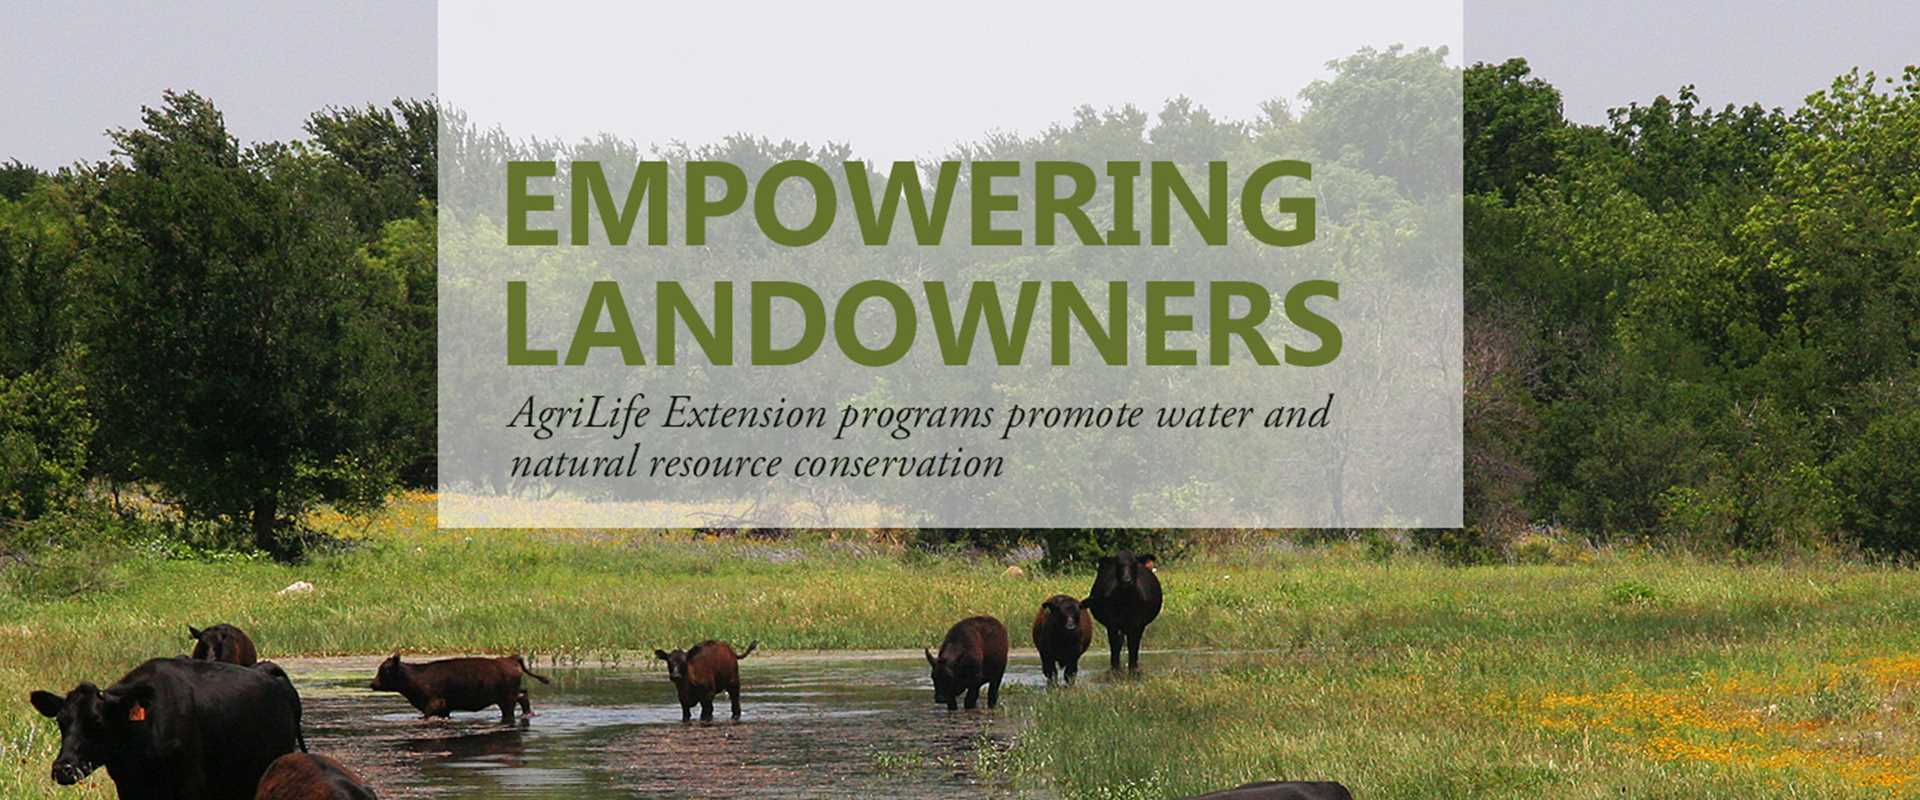 Empowering landowners